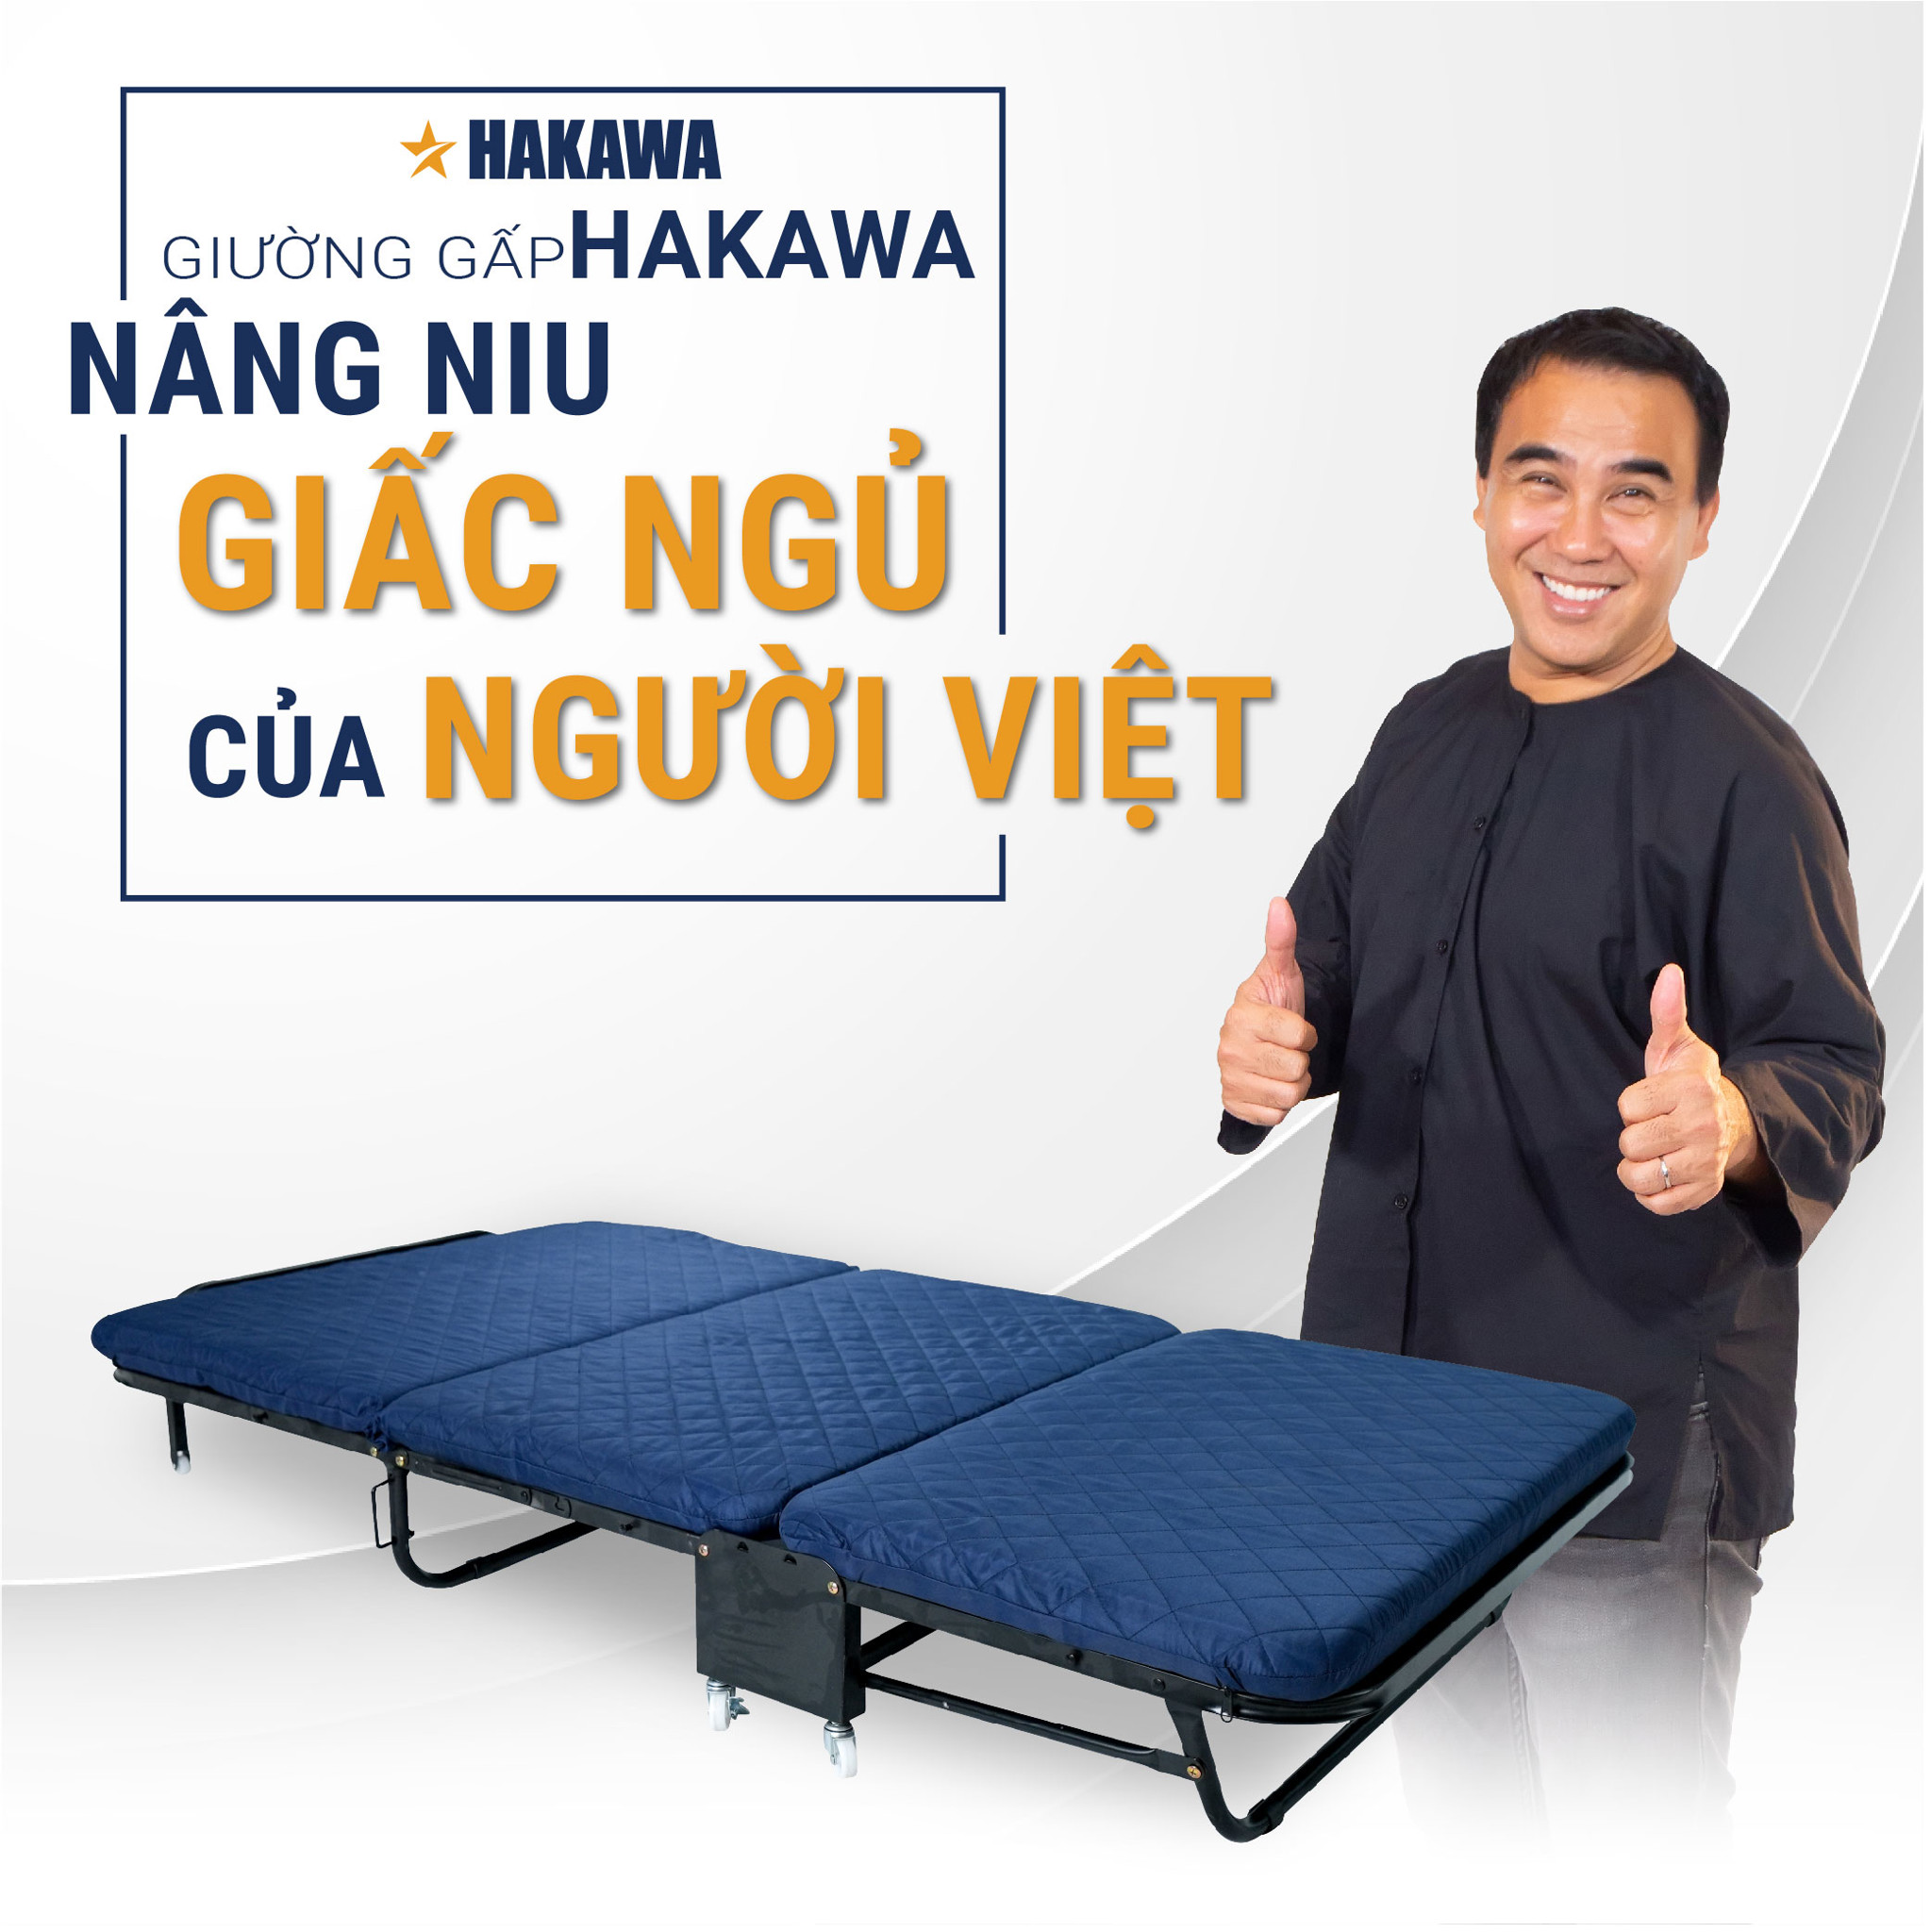 Giường gấp HAKAWA HK-GX3, món qua cho giấc ngủ trọn vẹn